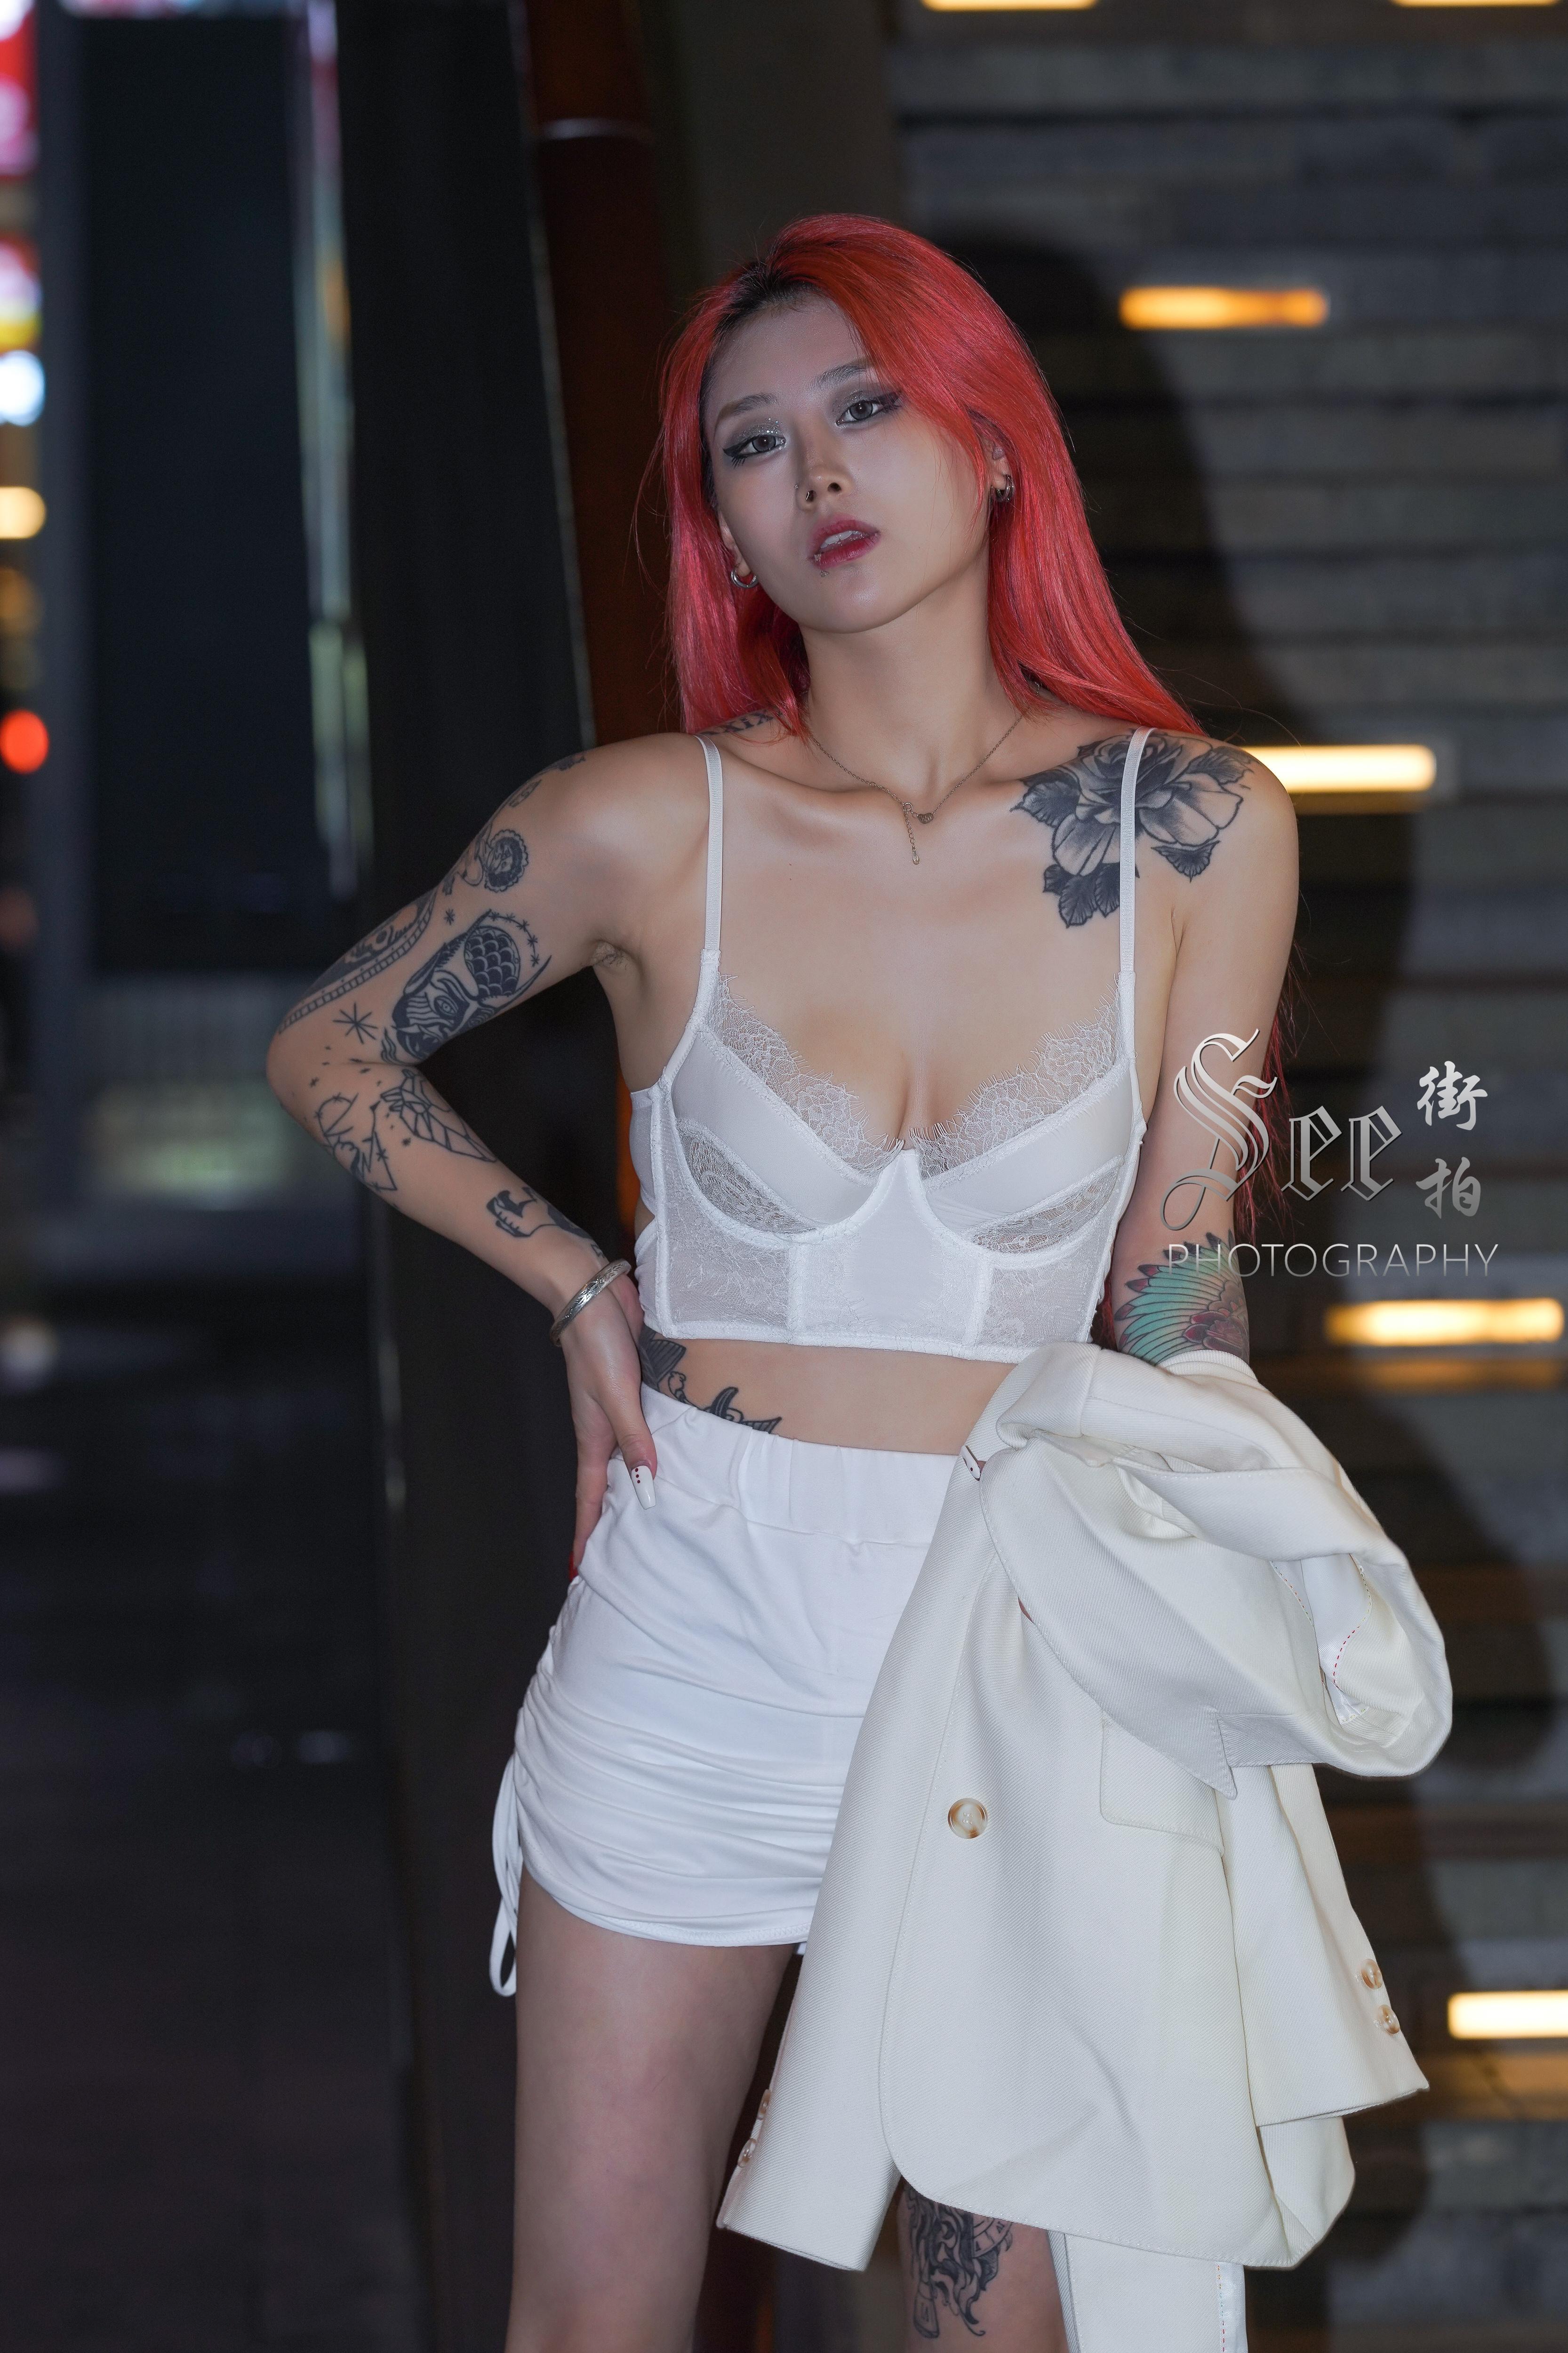 SEE街拍 魅力迷人的纹身少妇 白色短裙加蕾丝内衣性感妖娆,1 (5)